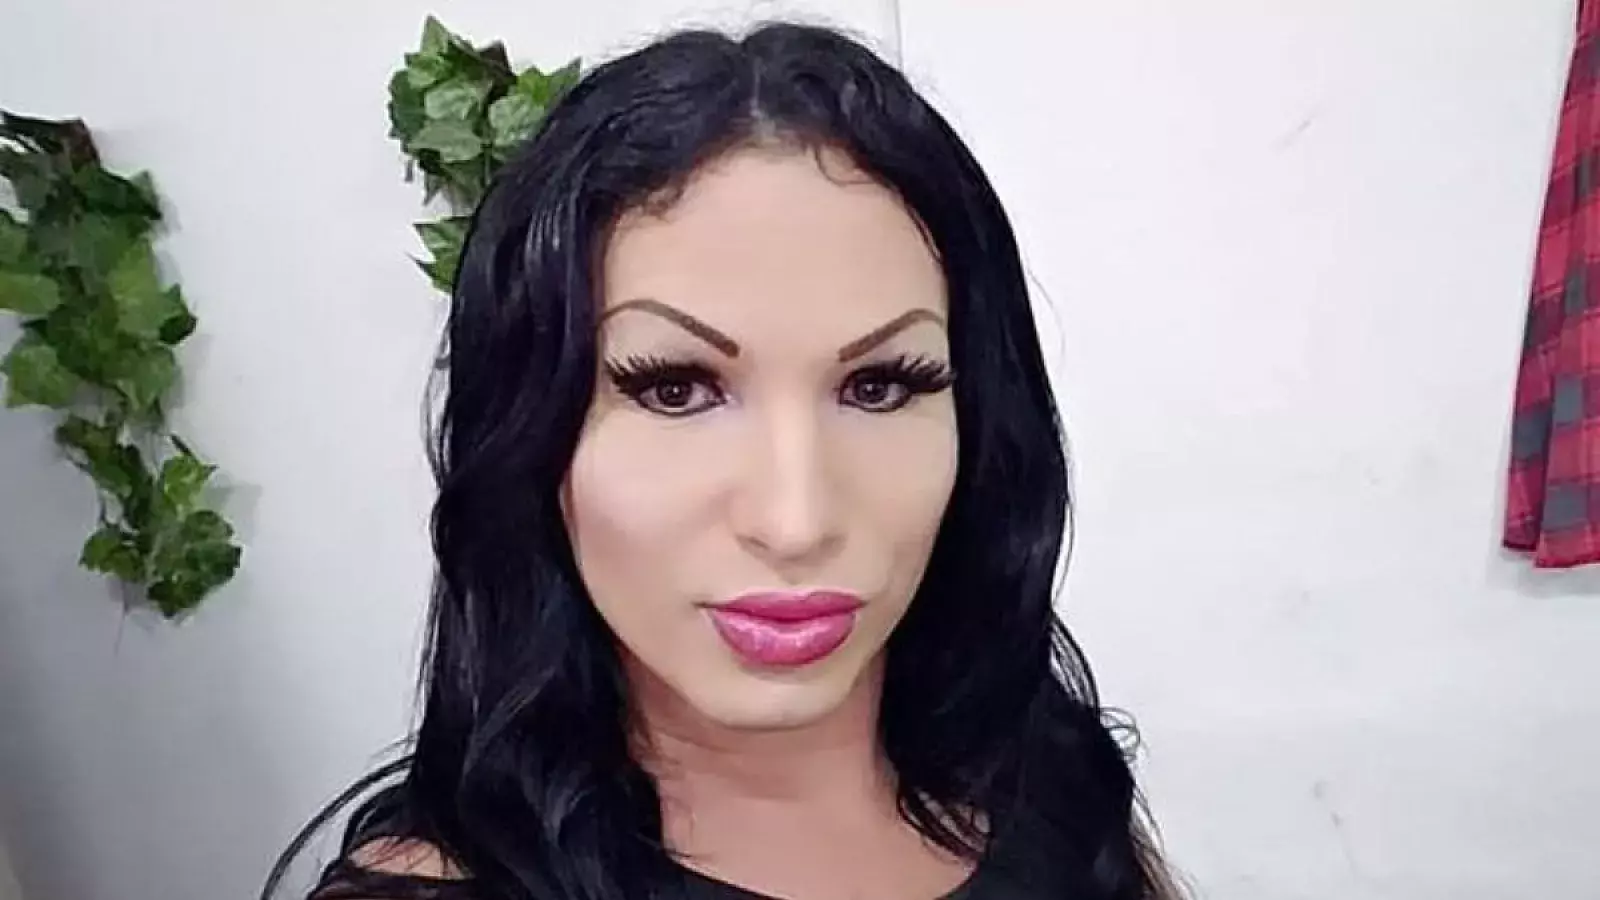 Brenda Díaz, presa política y trans cubana